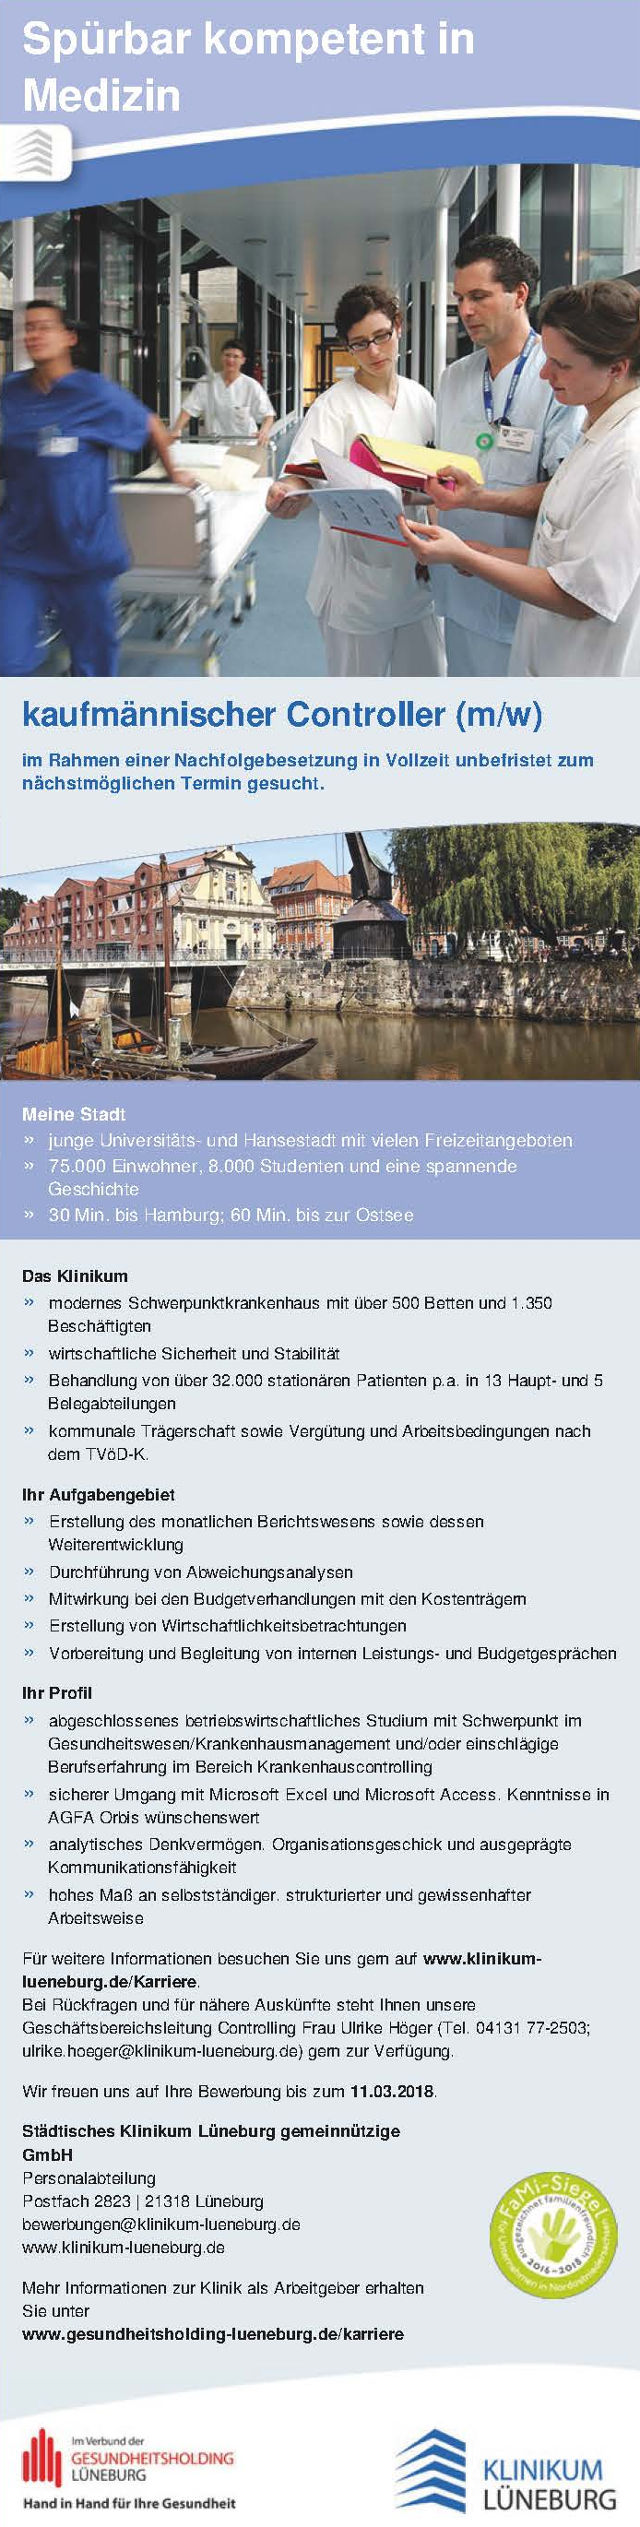 Städtisches Klinikum Lüneburg gGmbH: Kaufmännischer Controller (m/w)